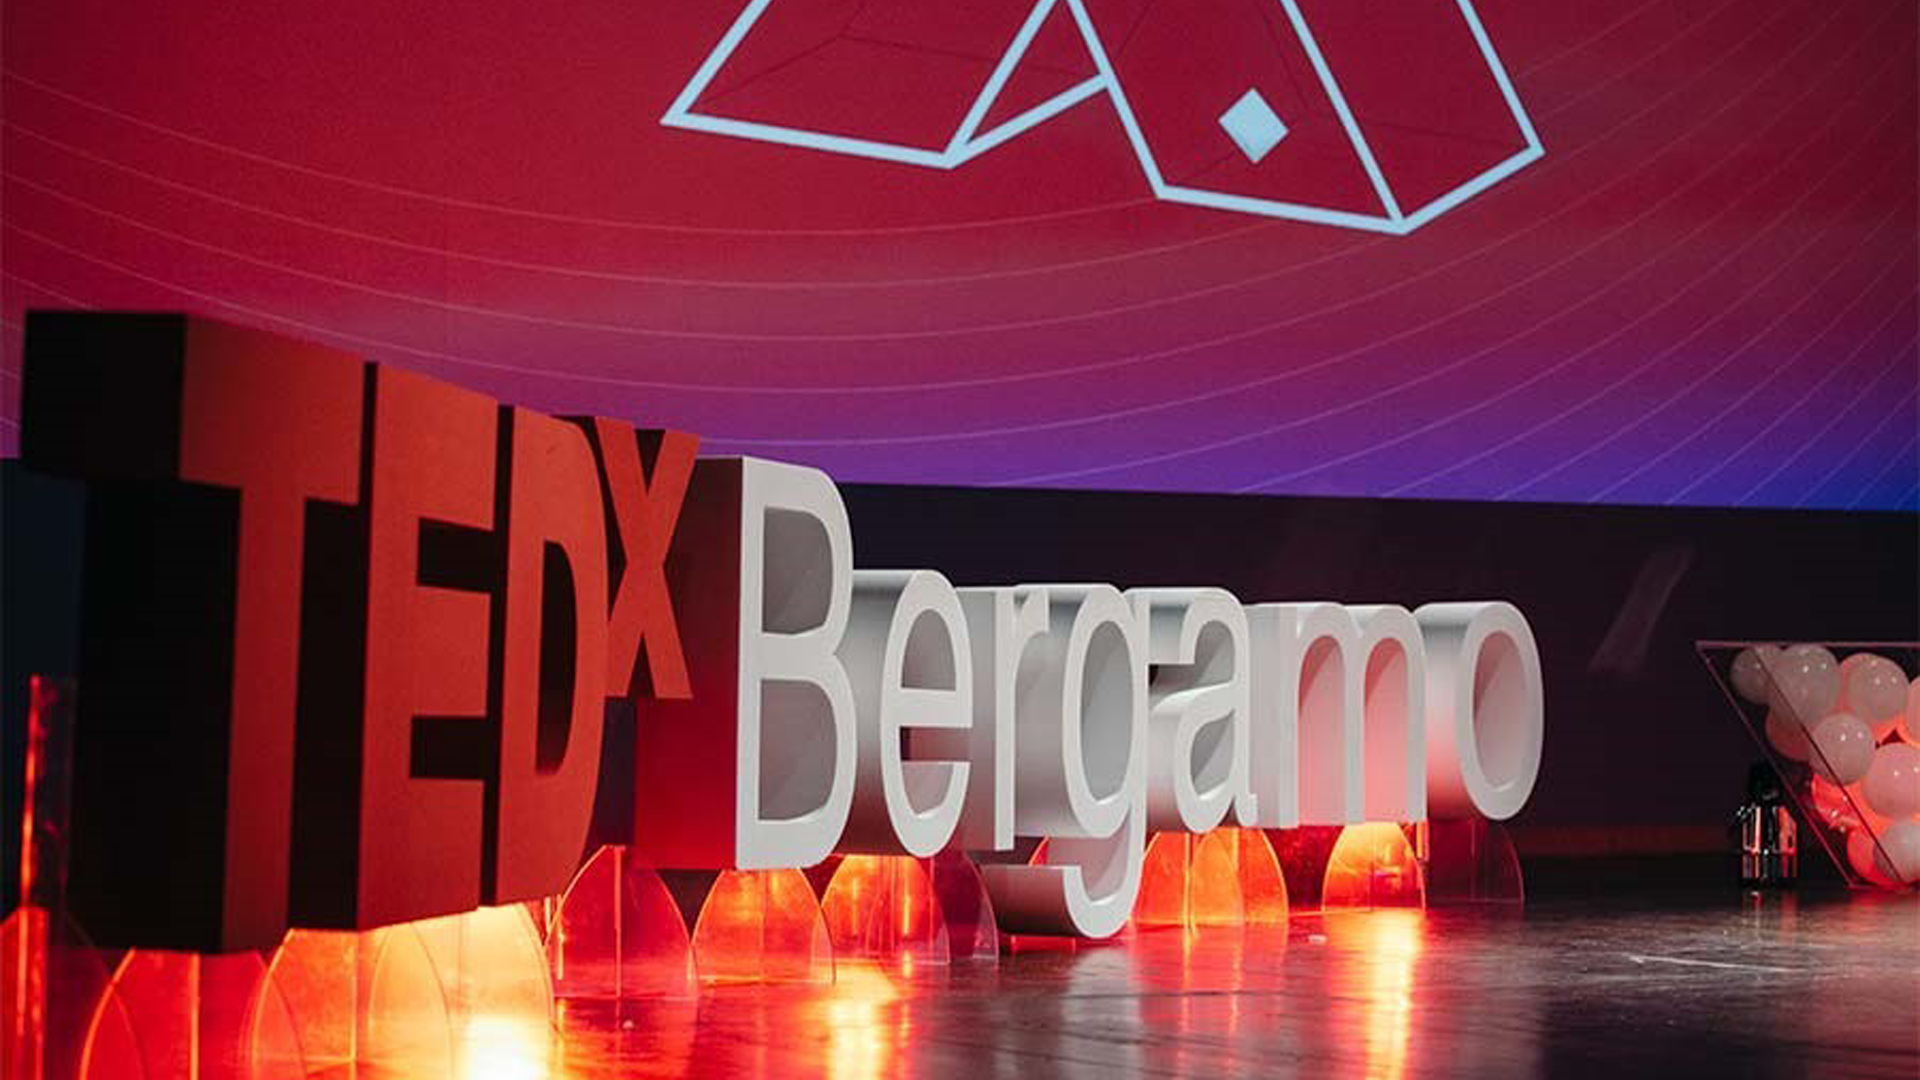 Have you met TEDx?